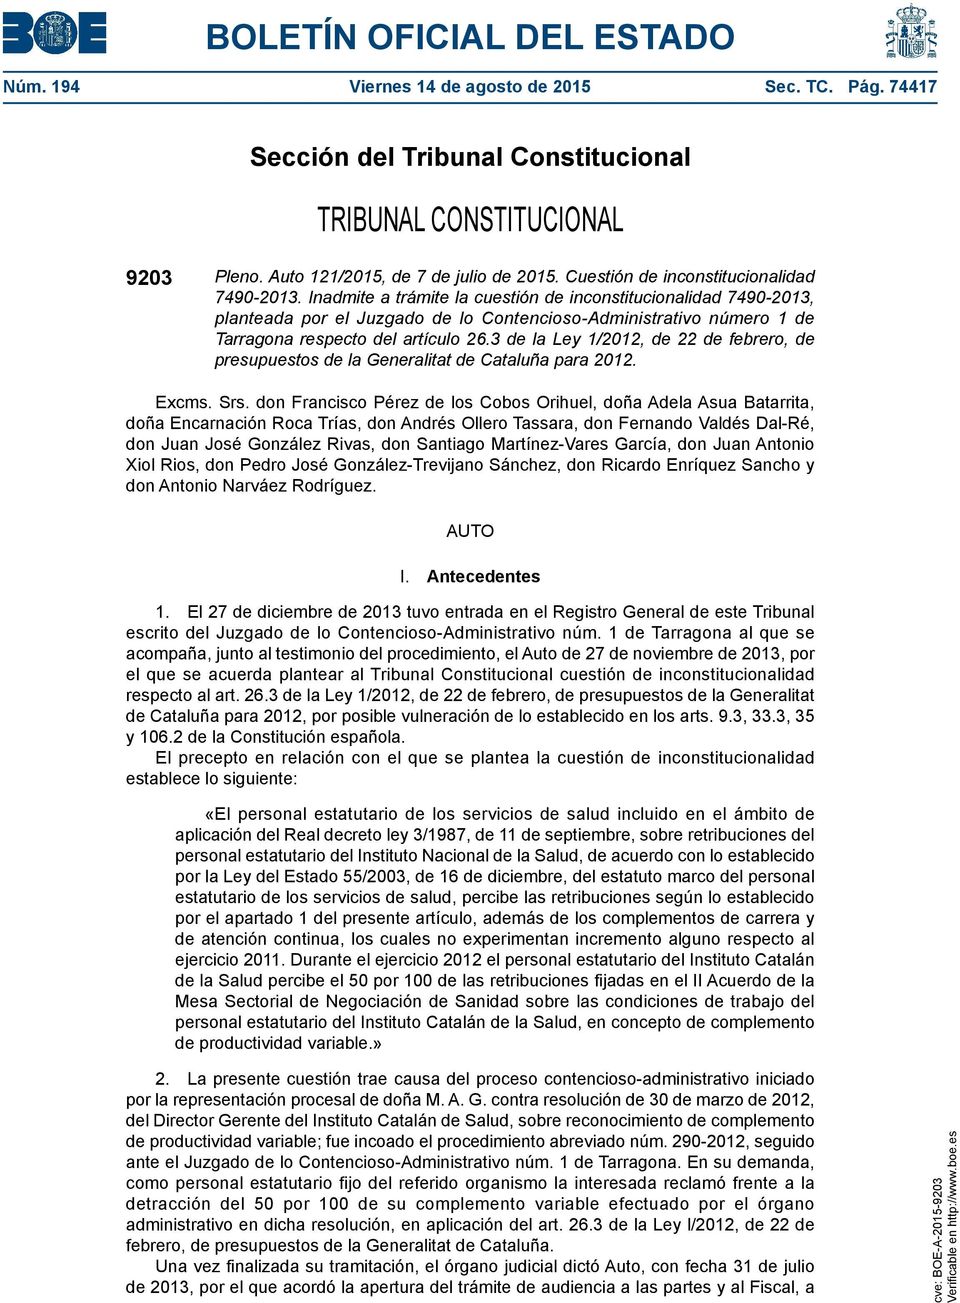 Inadmite a trámite la cuestión de inconstitucionalidad 7490-2013, planteada por el Juzgado de lo Contencioso-Administrativo número 1 de Tarragona respecto del artículo 26.